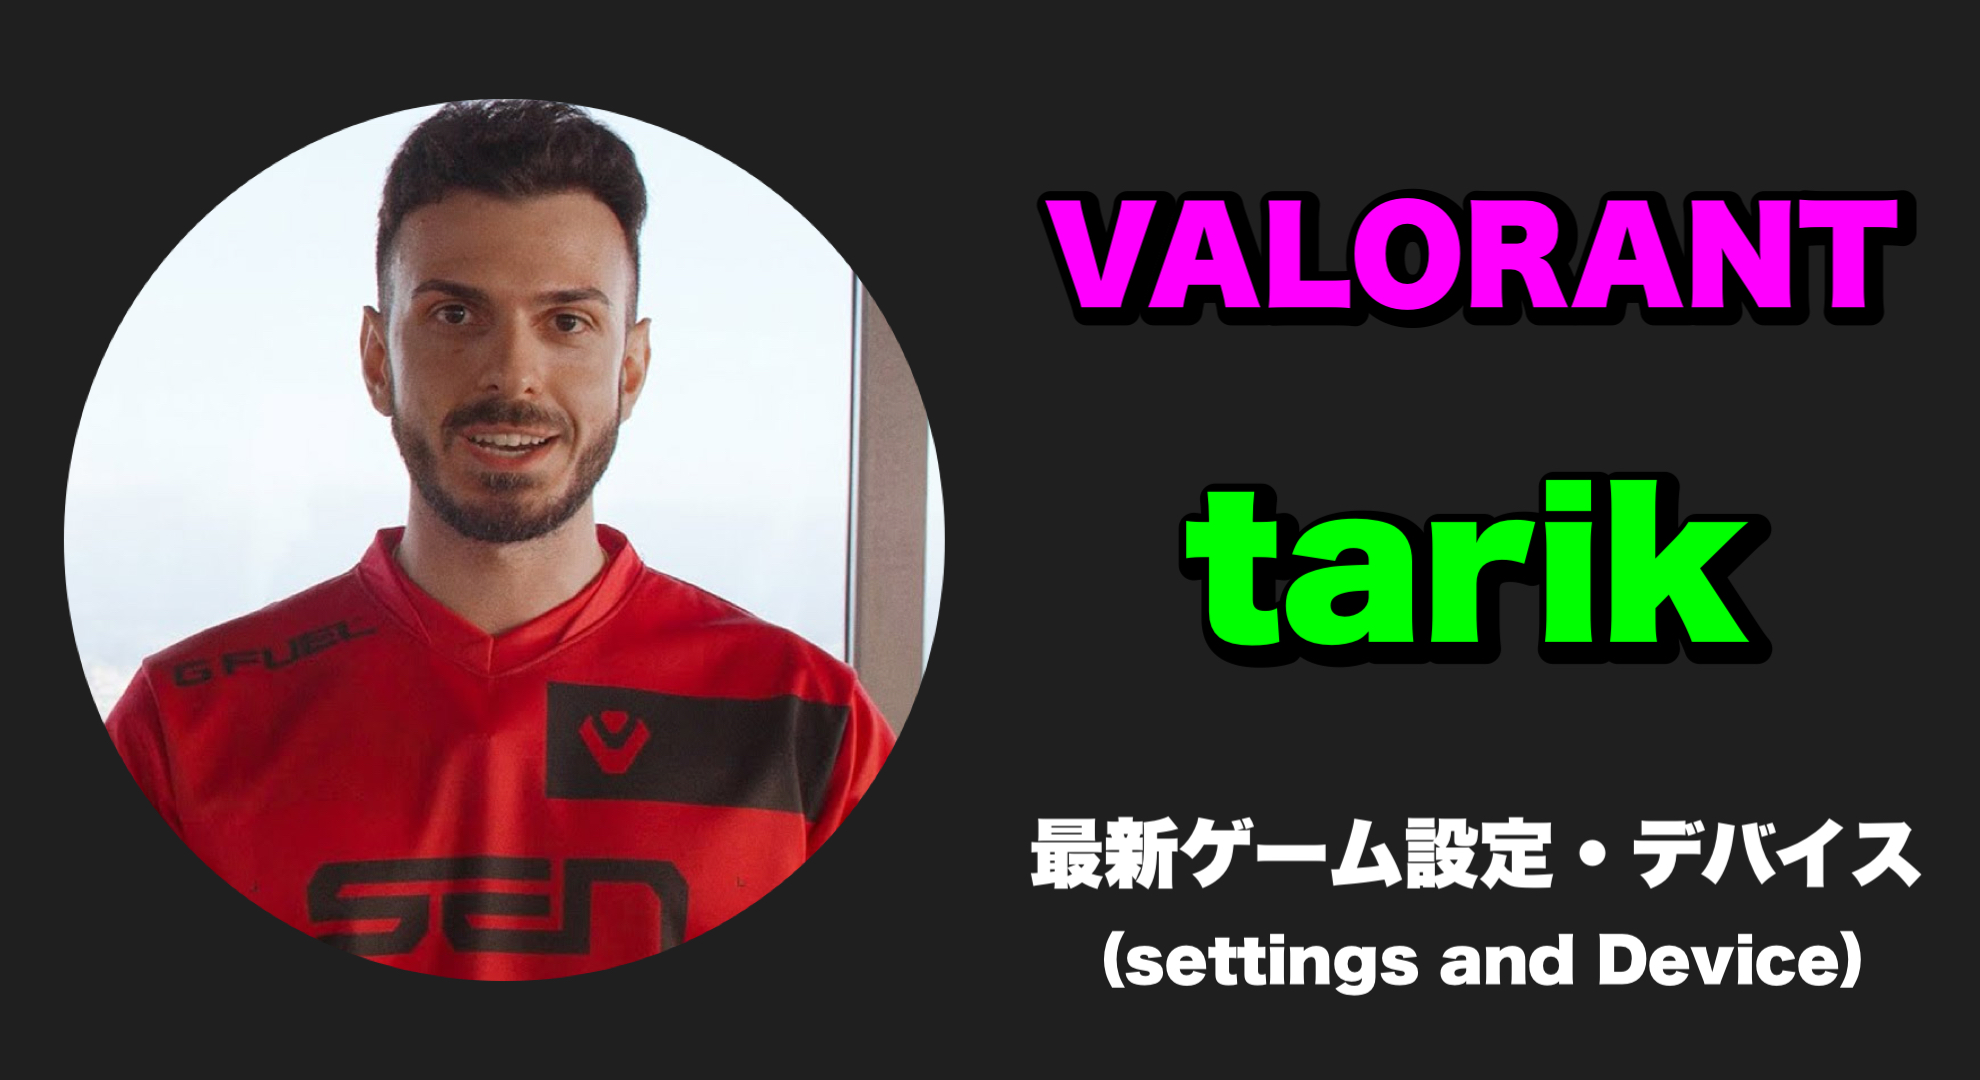 【VALORANT】tarik(タリク) 感度、キー配置、クロスヘア、設定、デバイス tarik sens tarik settings tarik crosshair tarik device